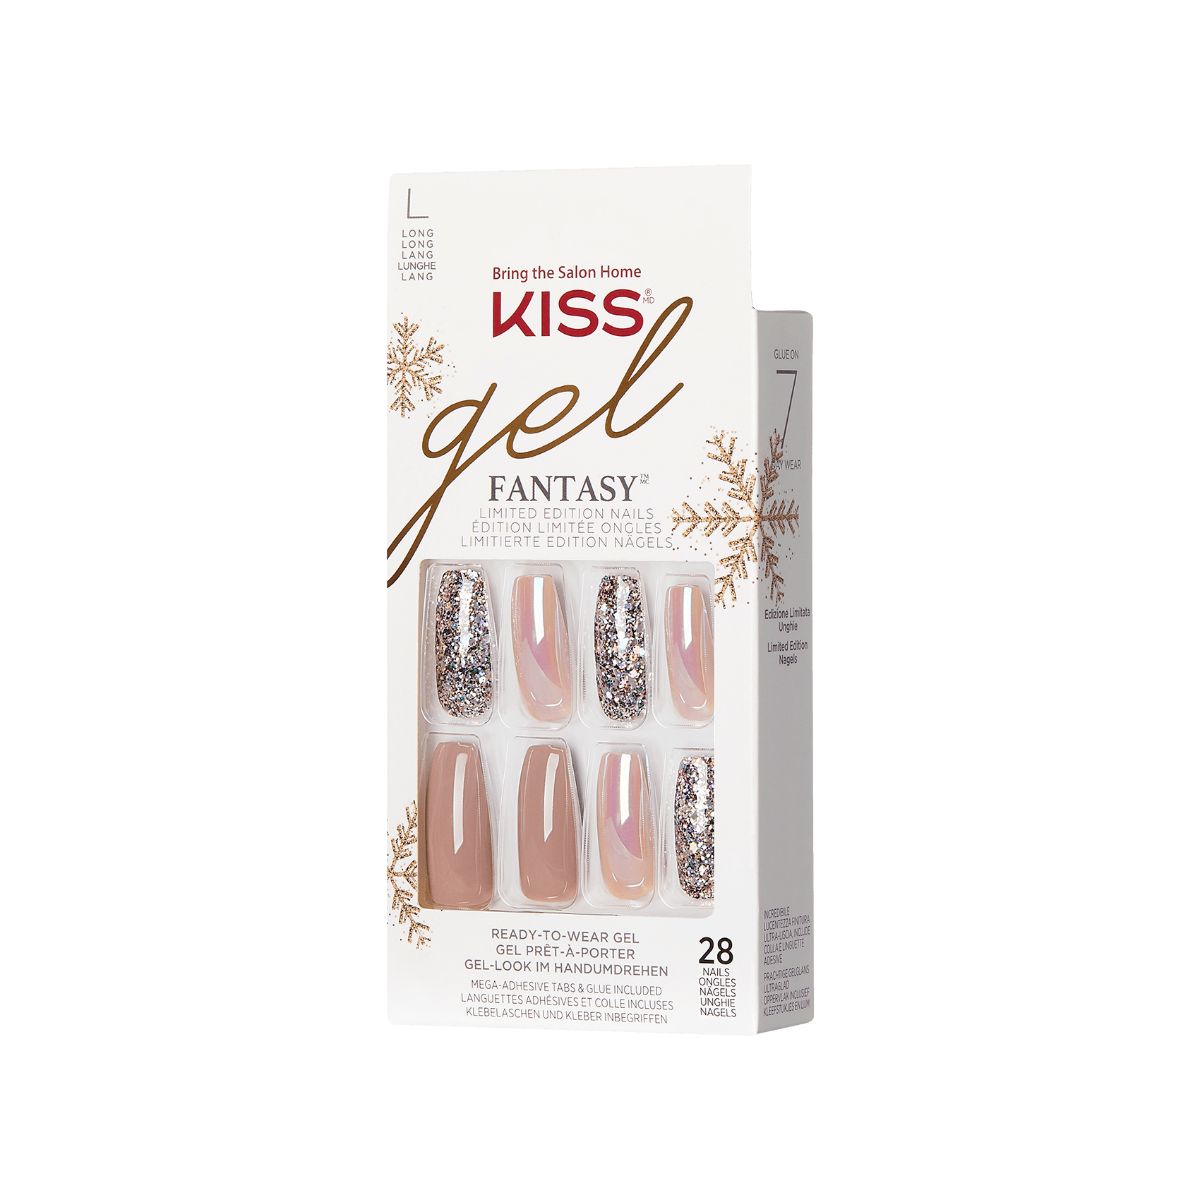 KISS Gel Fantasy Limited Edition Holiday Nails - Glow Up | KISS, imPRESS, JOAH